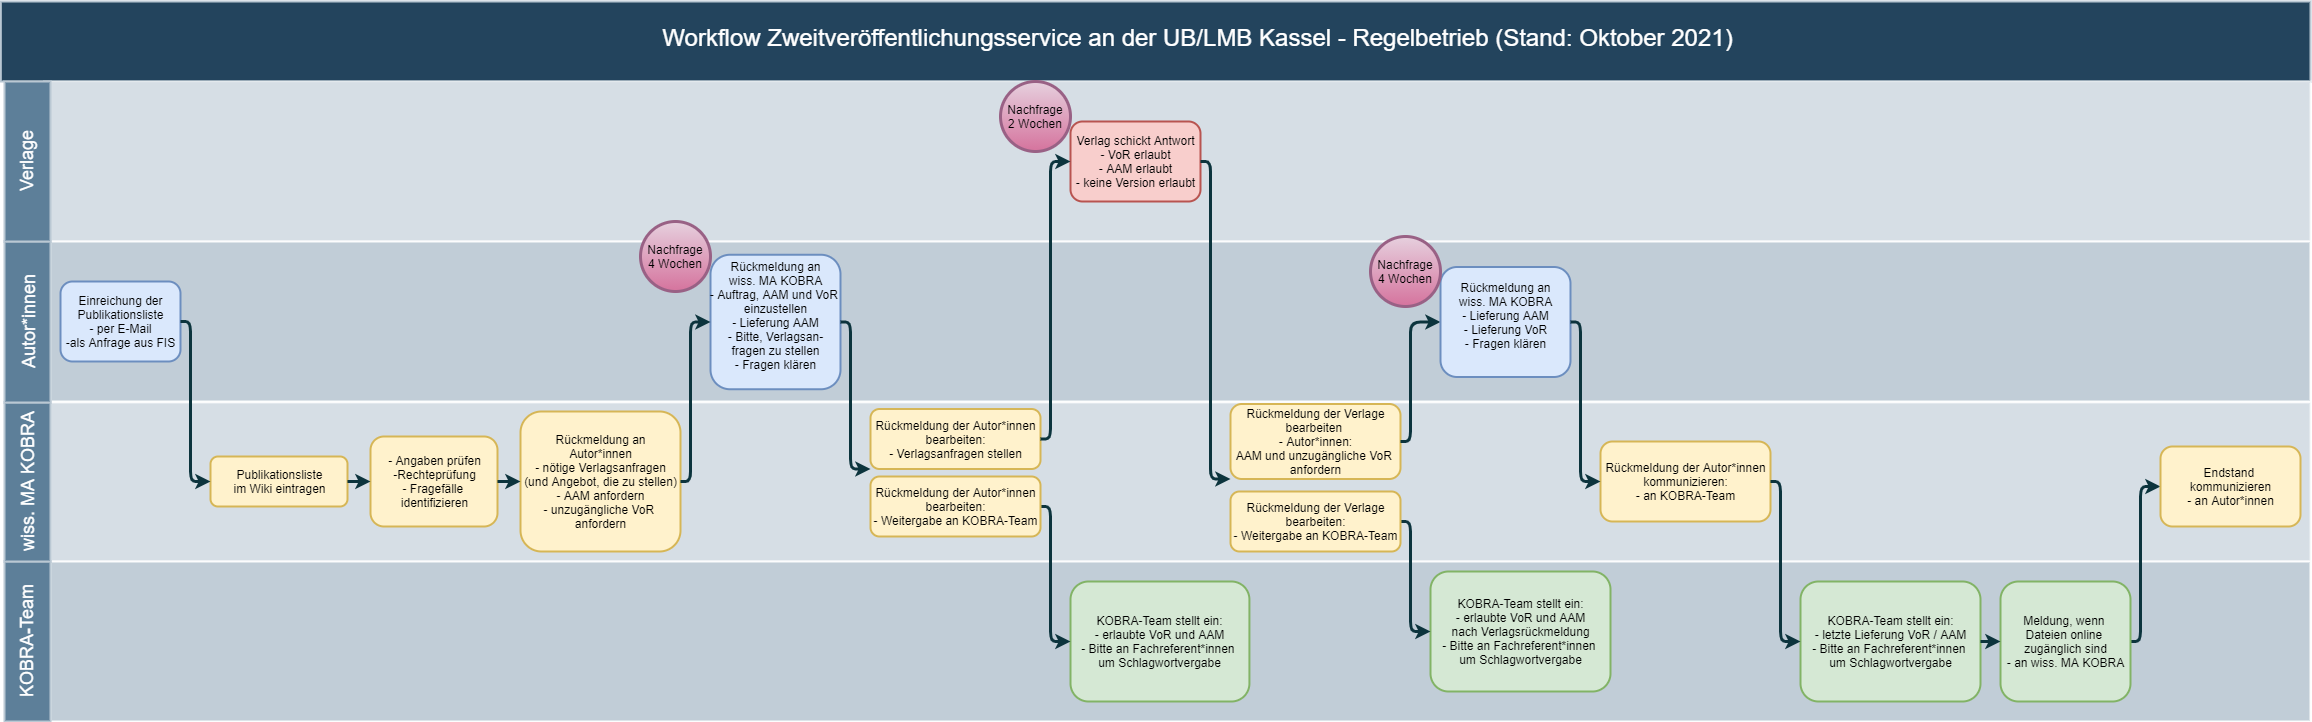 Abb. 6: Workflow Zweitveröffentlichungsservice an der UB/LMB Kassel im Regelbetrieb (Stand: Oktober 2021; Abbildung liegt als separate Datei dem Artikel bei)